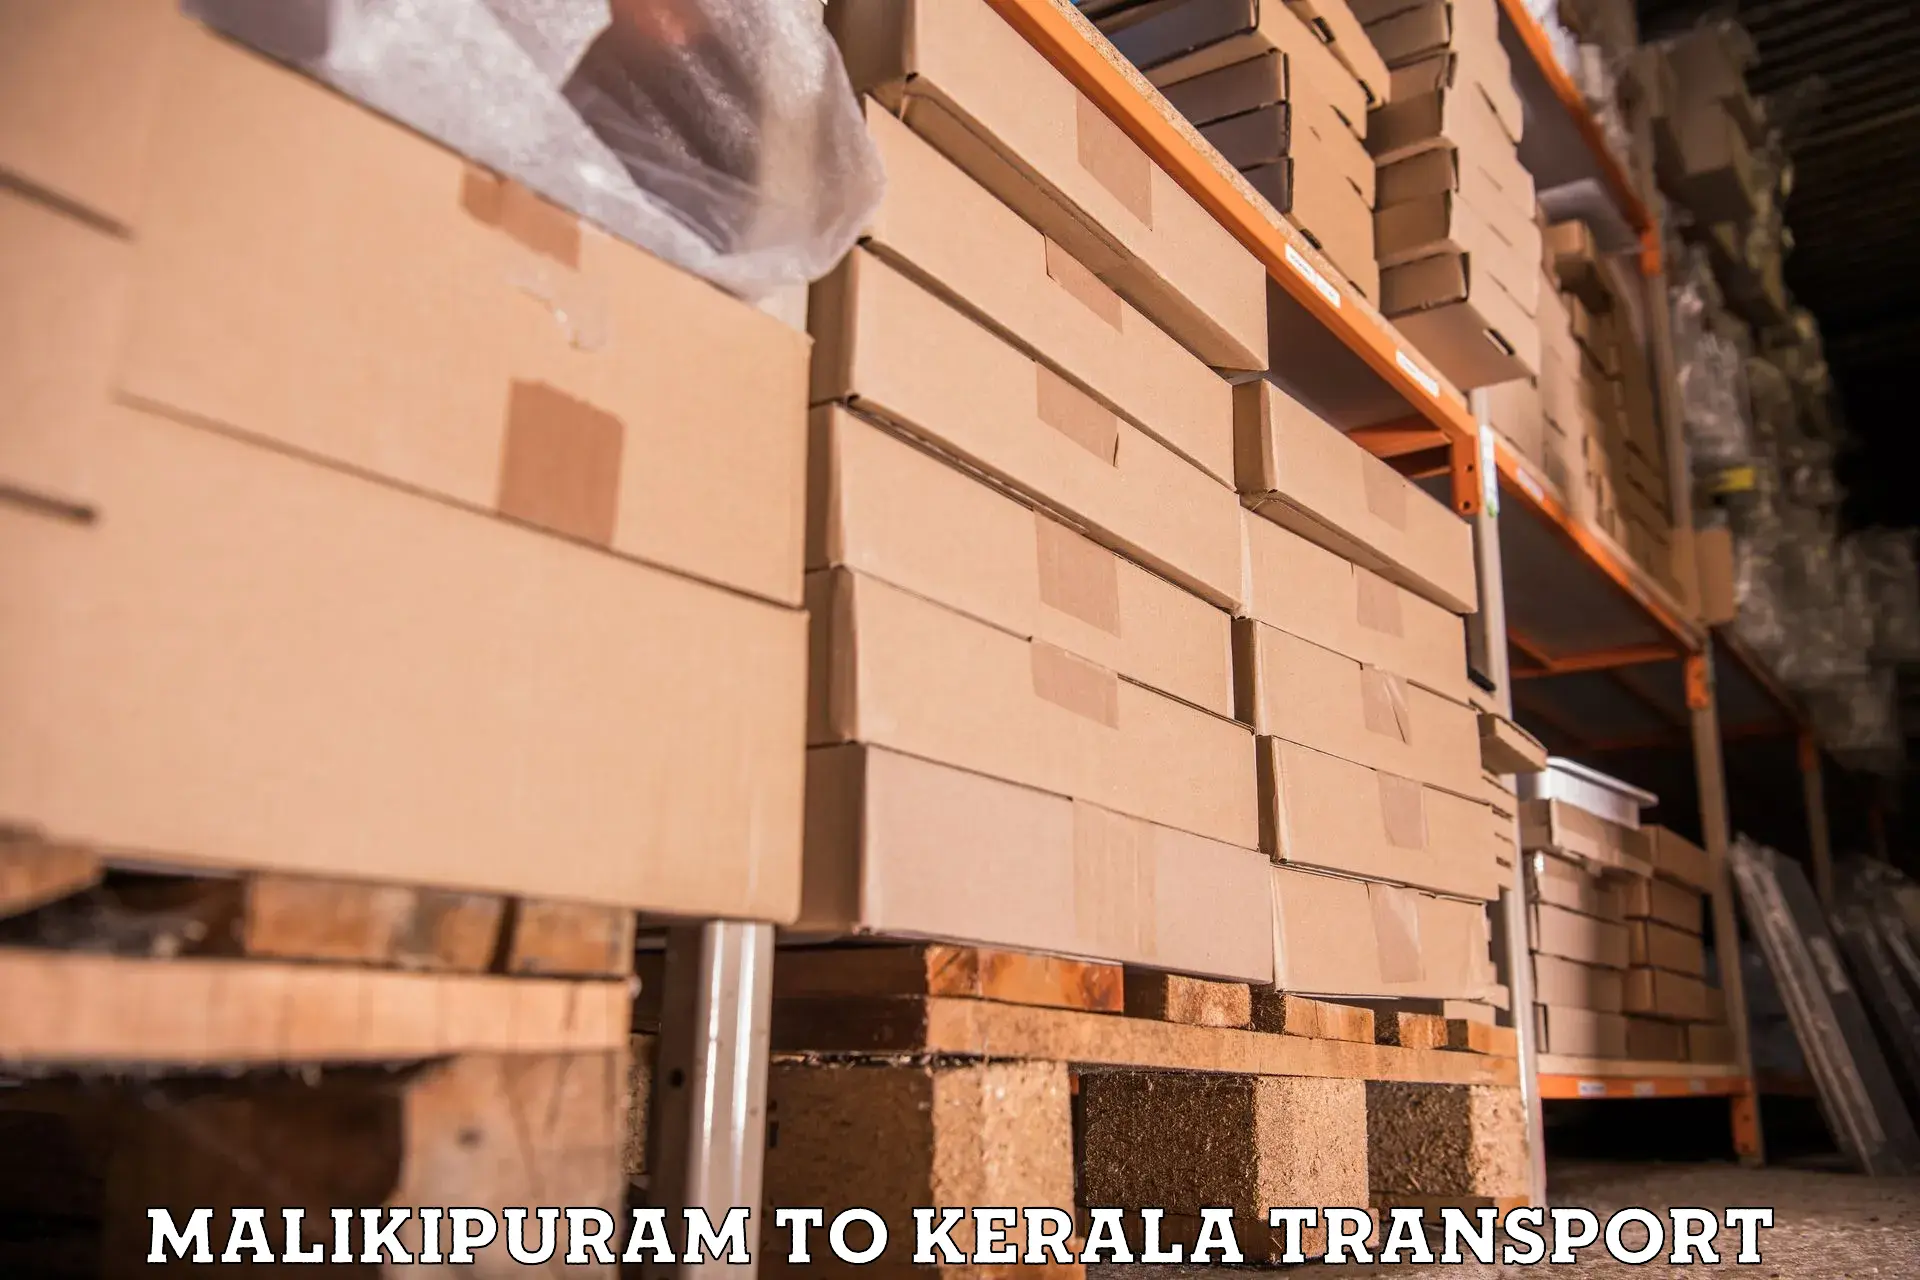 Part load transport service in India Malikipuram to Pandikkad